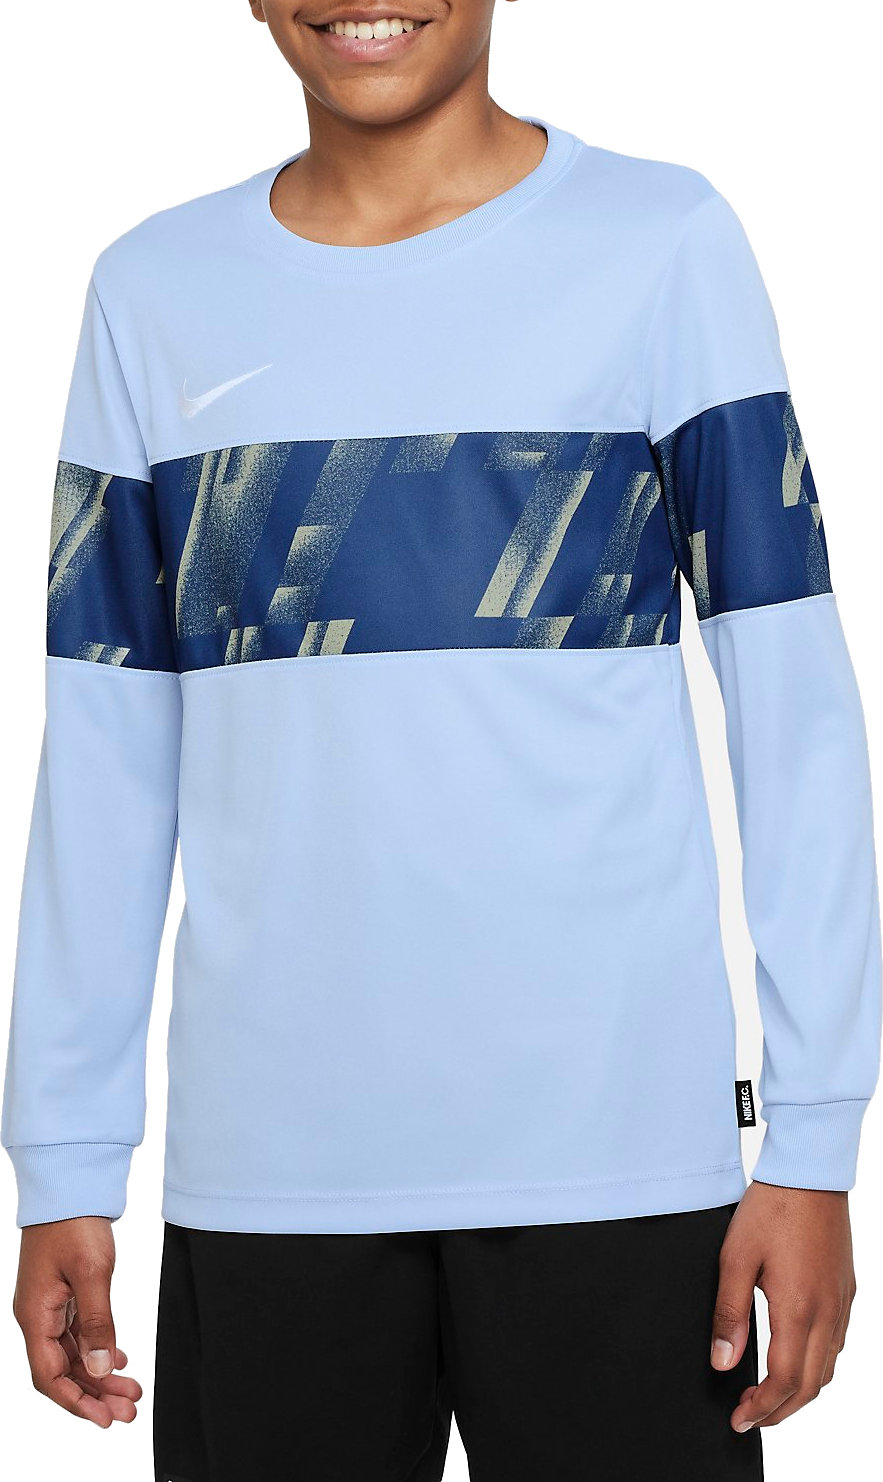 Μακρυμάνικη μπλούζα Nike F.C. Dri-FIT Libero